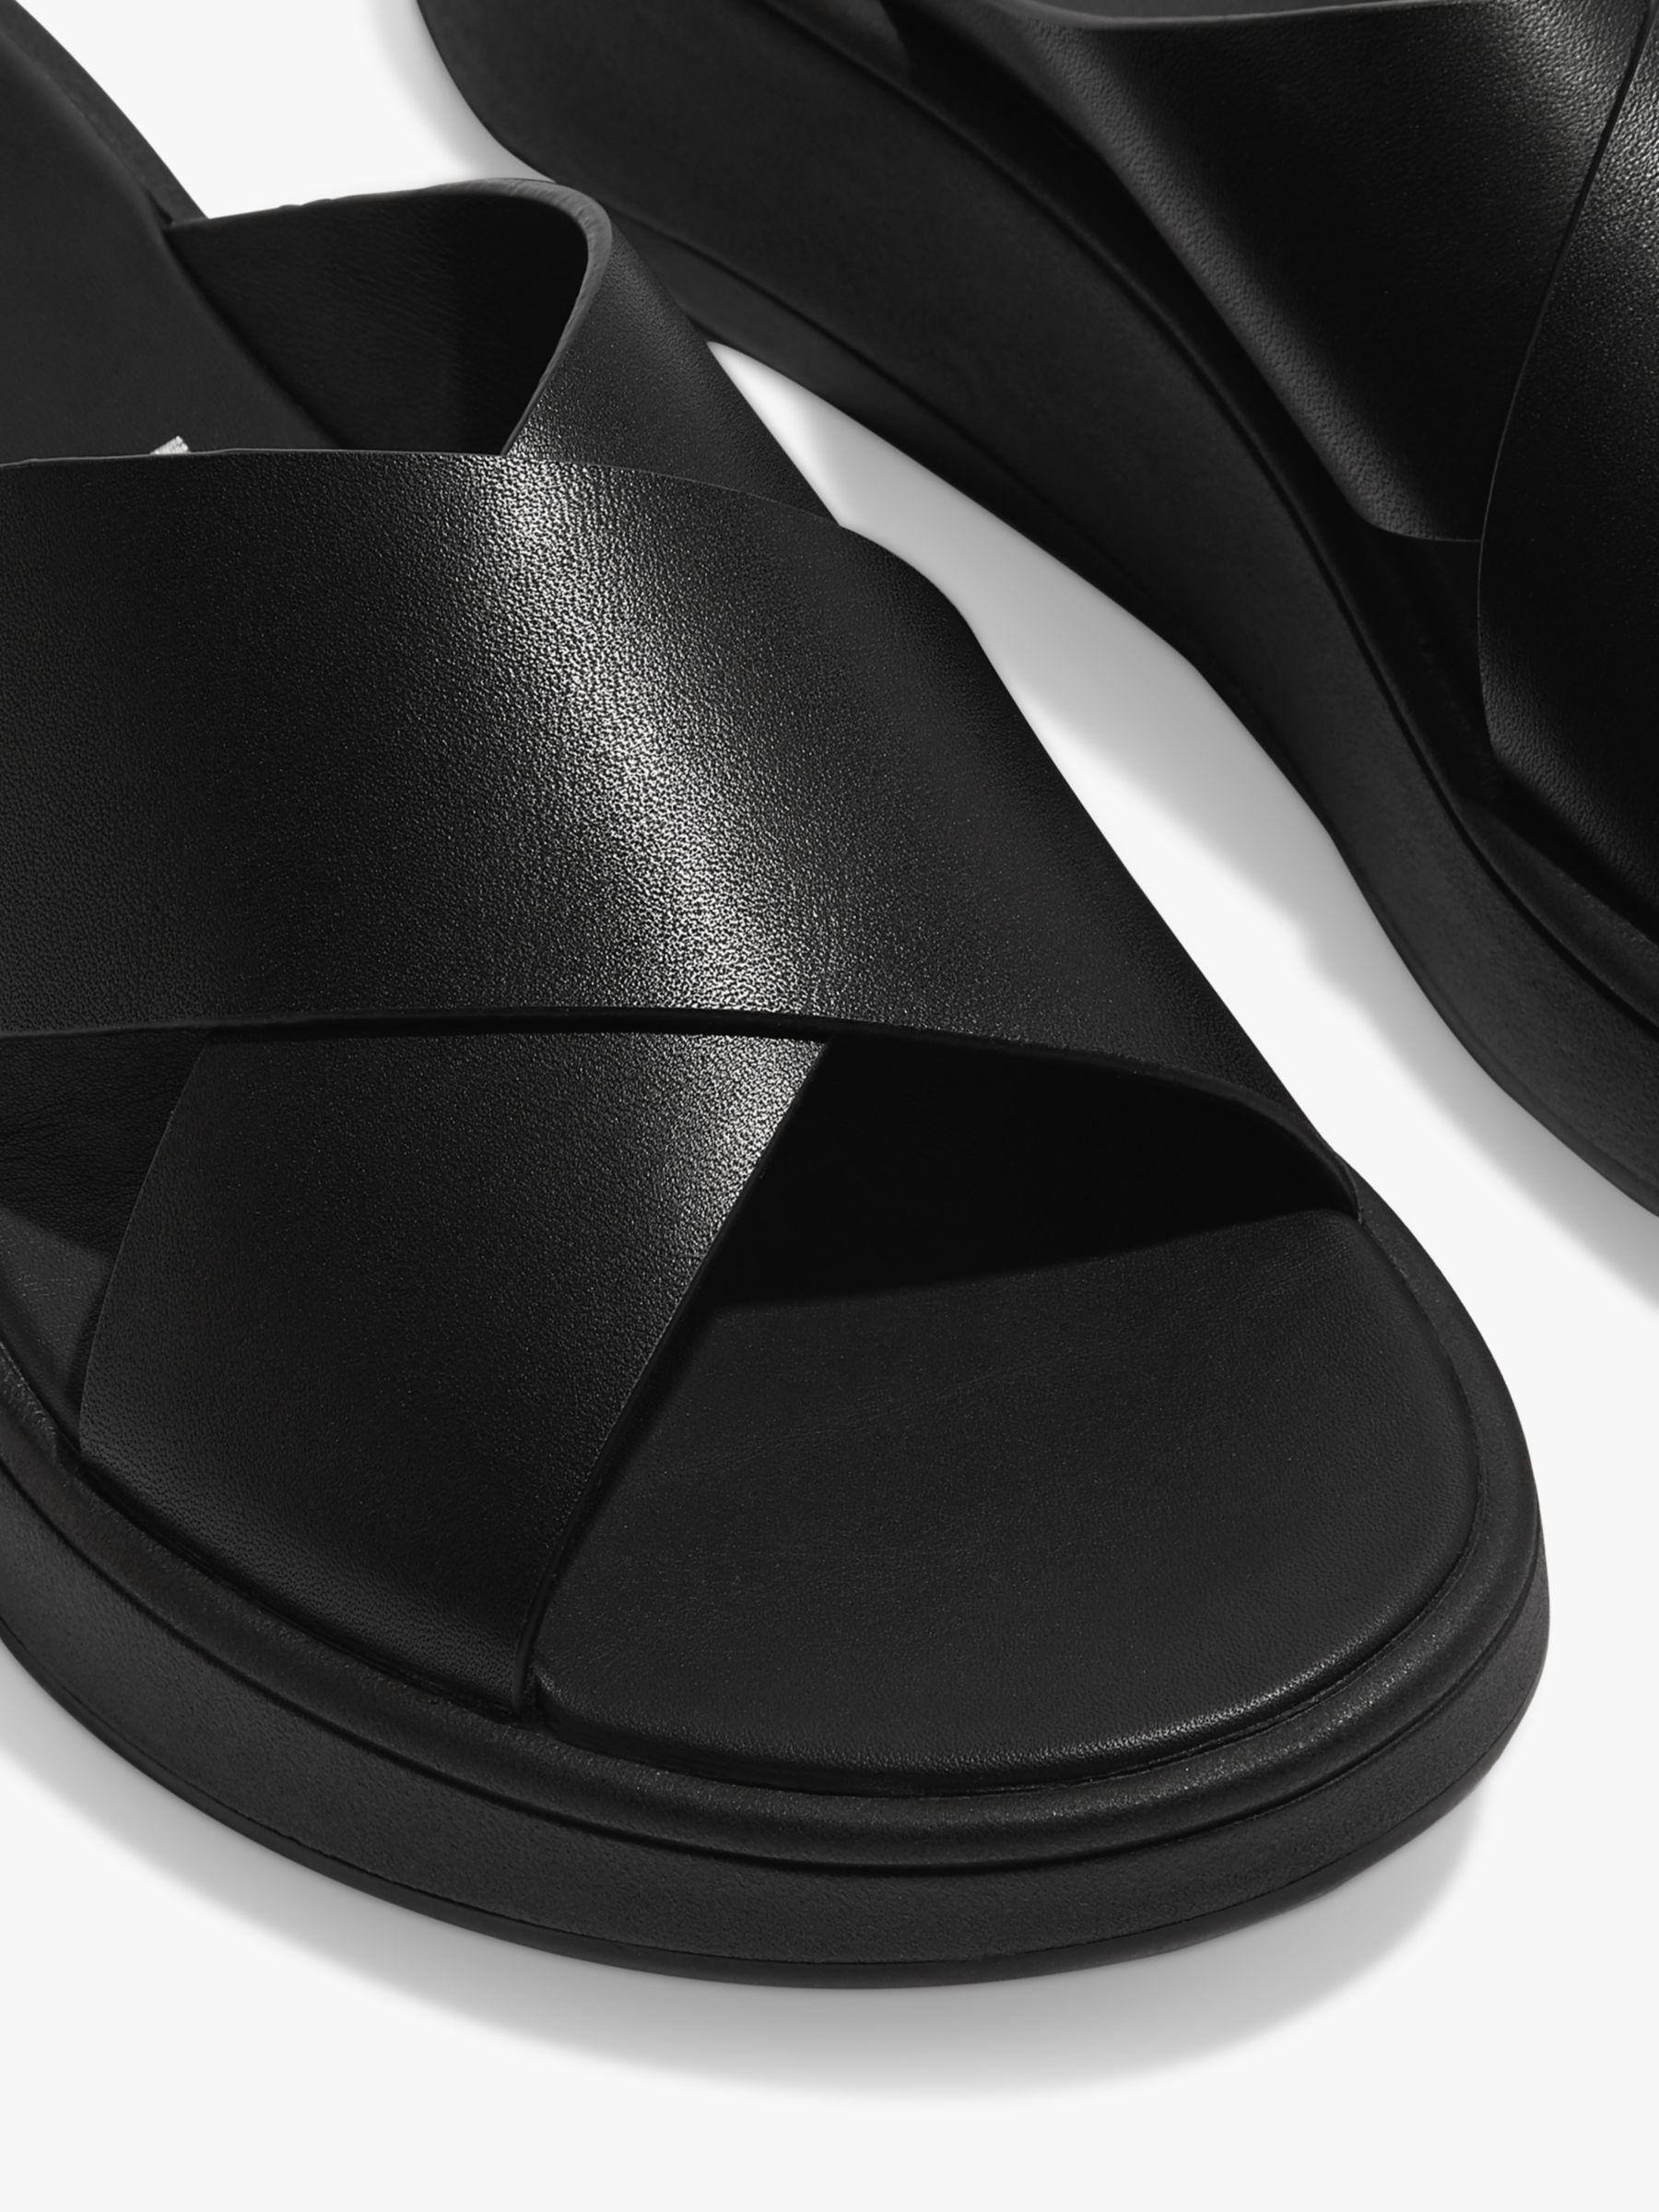 Buy FitFlop F-Mode Leather Cross Flatform Slides, All Black Online at johnlewis.com